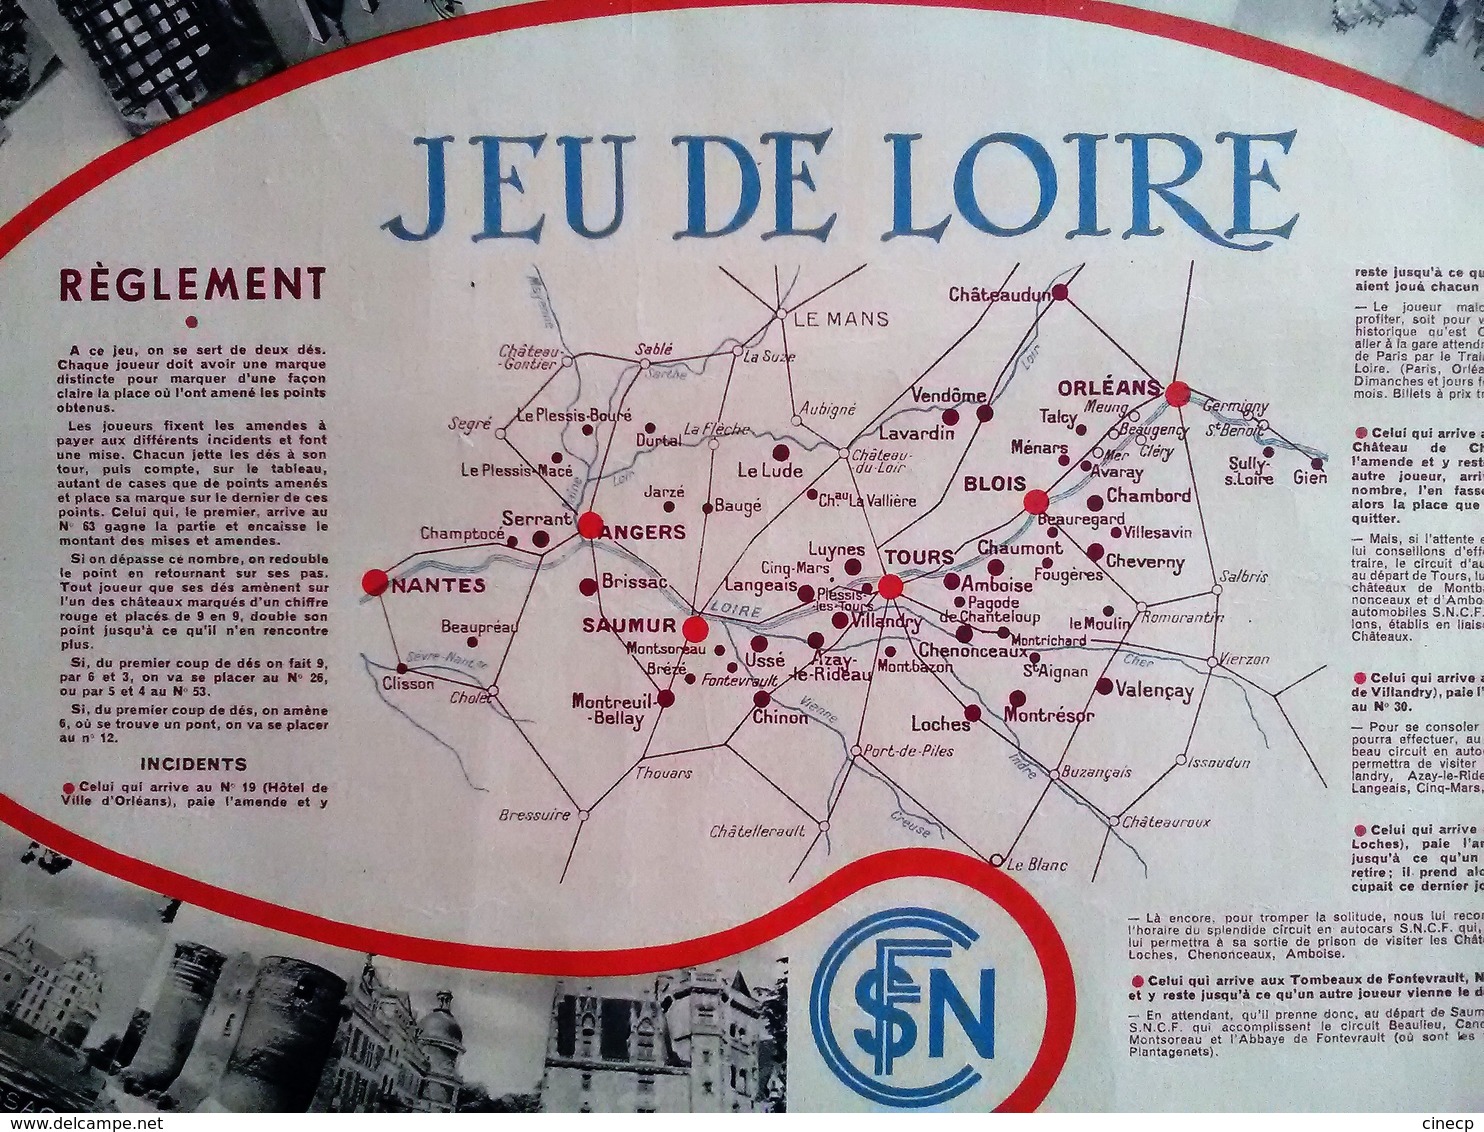 JEU DE PLATEAU PUBLICITE SNCF JEU DE LOIRE Illustration BELLE AFFICHE ANCIENNE ORIGINALE JEU DE L' OIE - Chemin De Fer